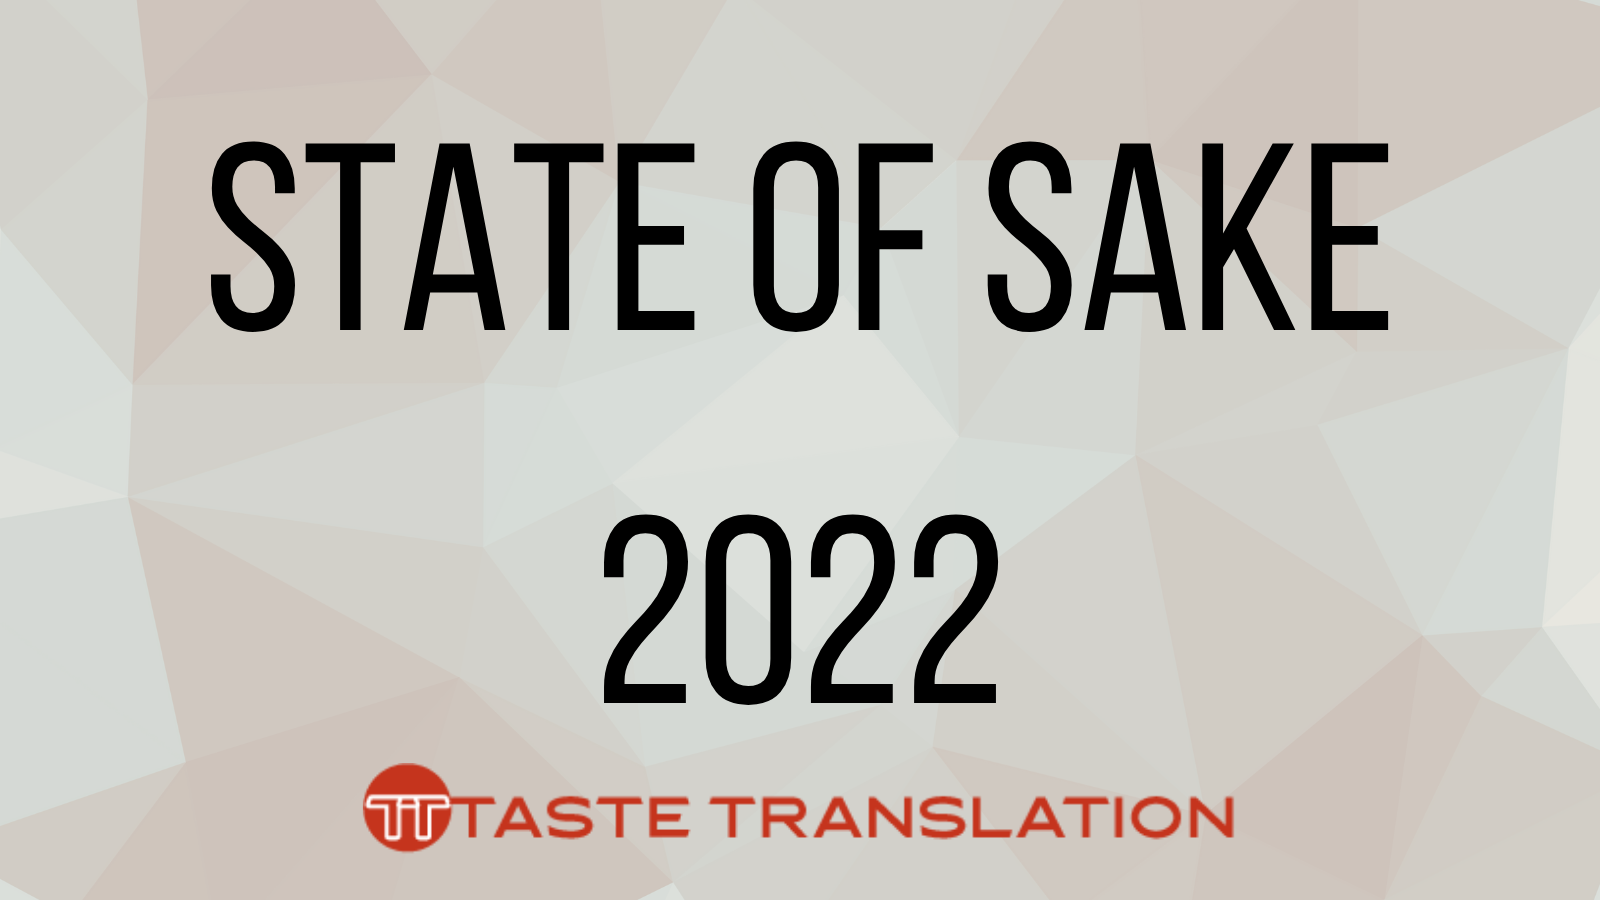 Text: State of sake 2022